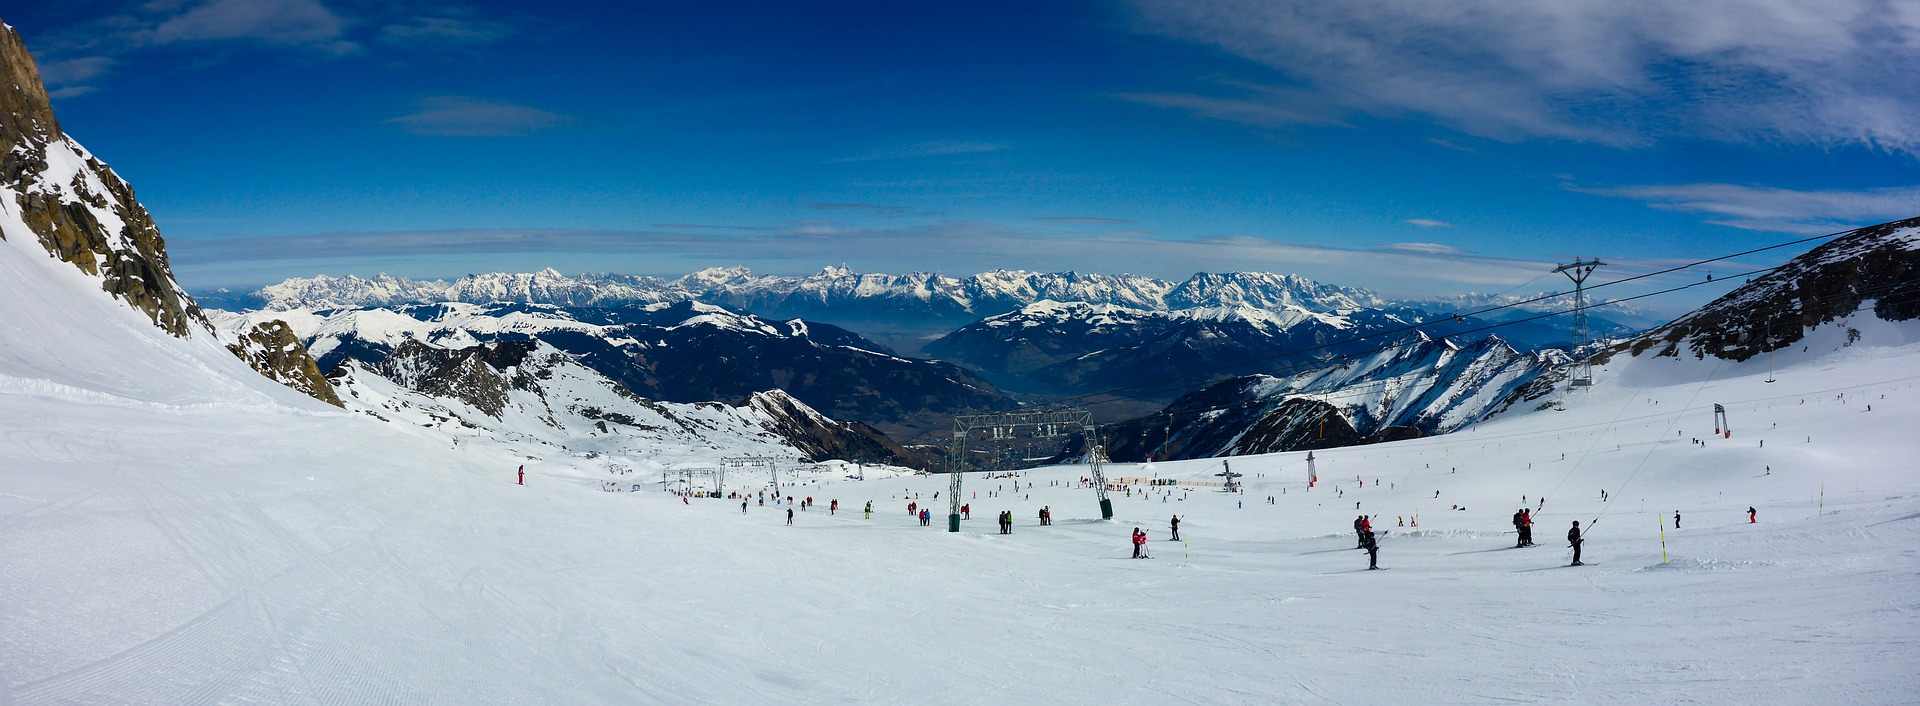 Suivez-nous pour organiser vos vacances de ski au meilleur prix